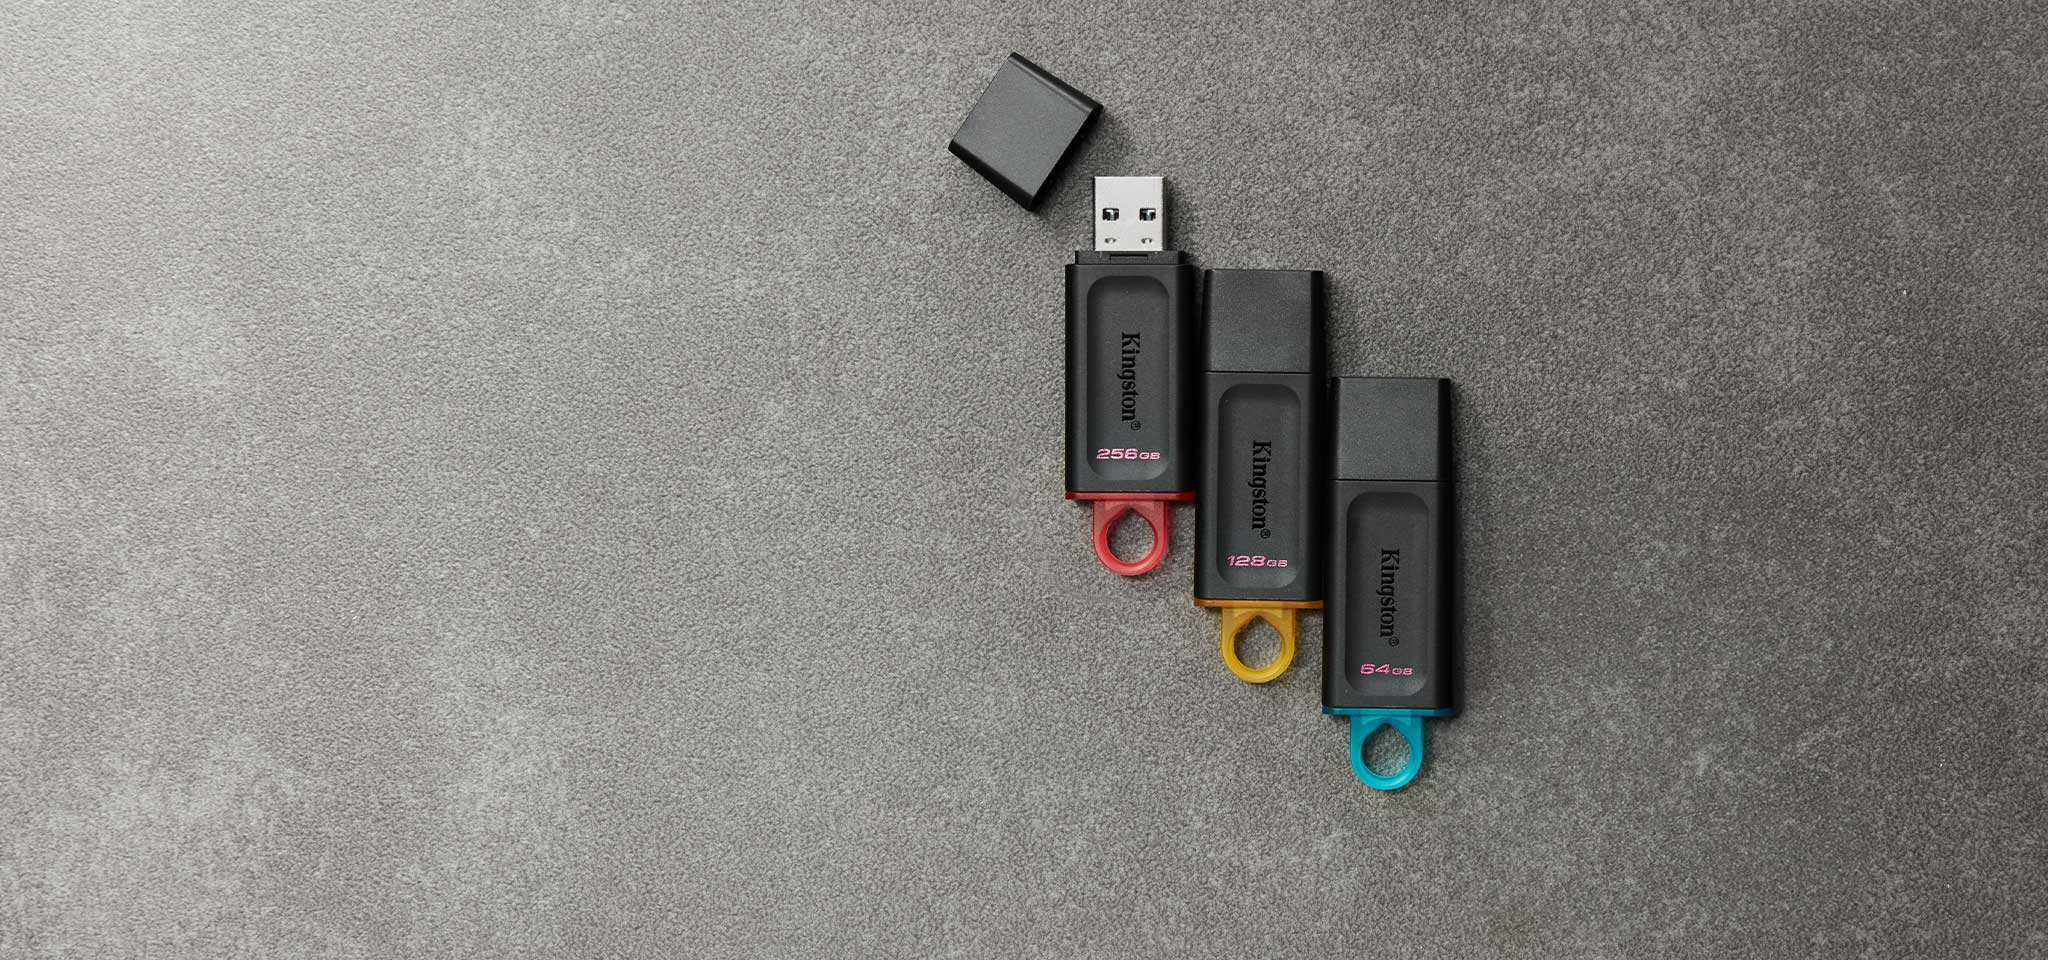 Widok z góry na cztery pamięci flash USB DT Exodia w różnych kolorach, ułożone według pojemności na szarym dywanie